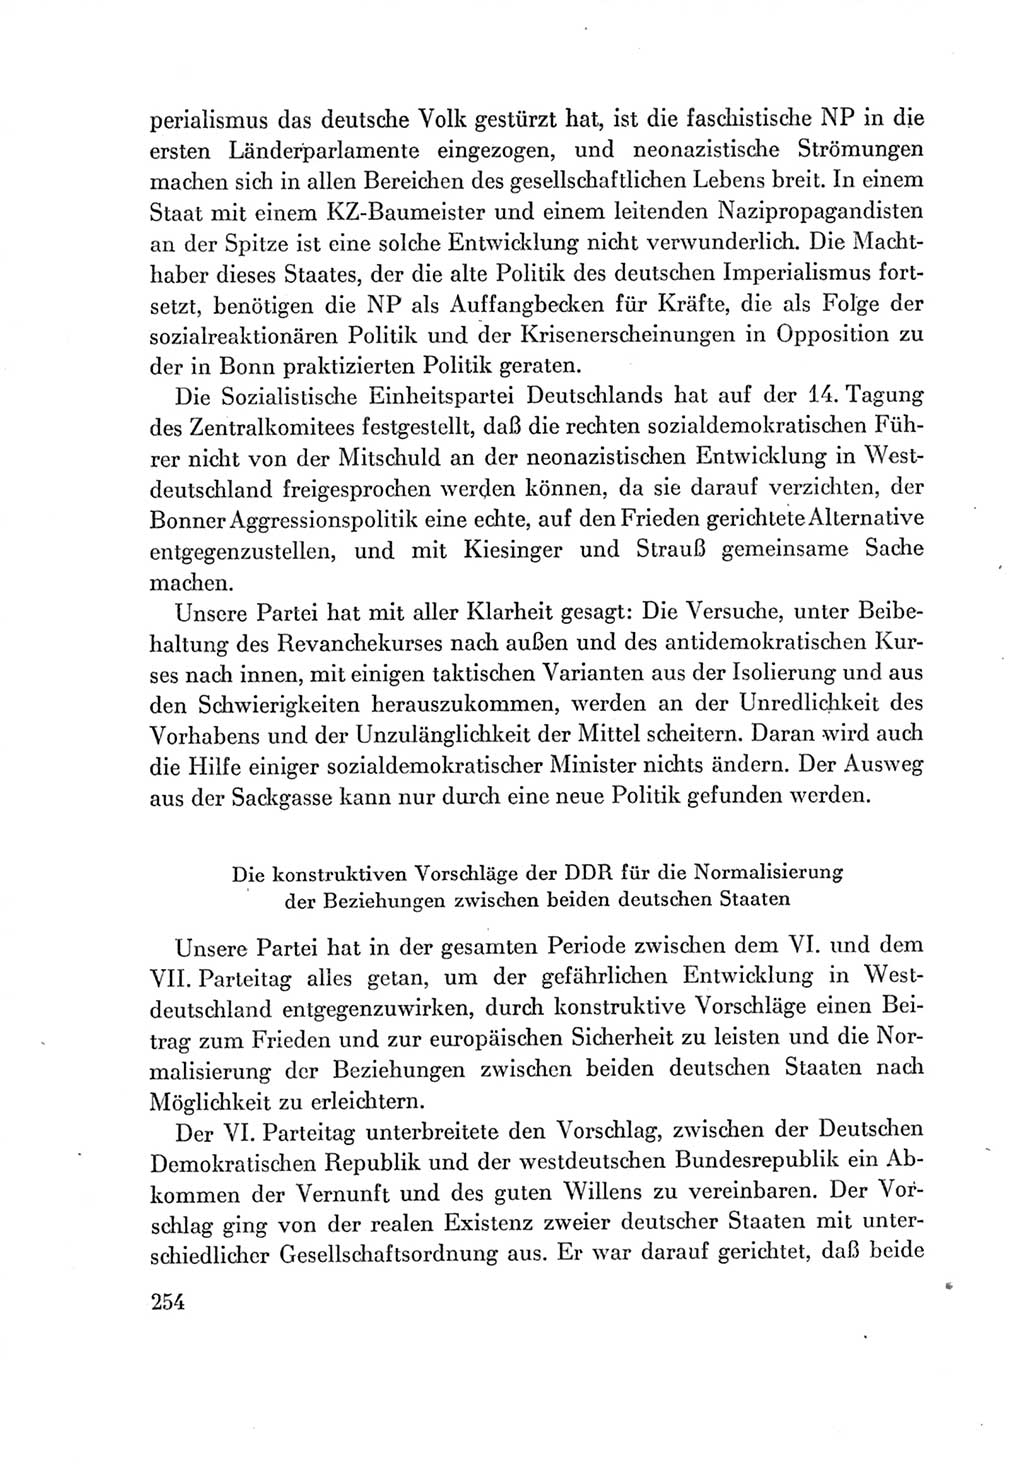 Protokoll der Verhandlungen des Ⅶ. Parteitages der Sozialistischen Einheitspartei Deutschlands (SED) [Deutsche Demokratische Republik (DDR)] 1967, Band Ⅳ, Seite 254 (Prot. Verh. Ⅶ. PT SED DDR 1967, Bd. Ⅳ, S. 254)